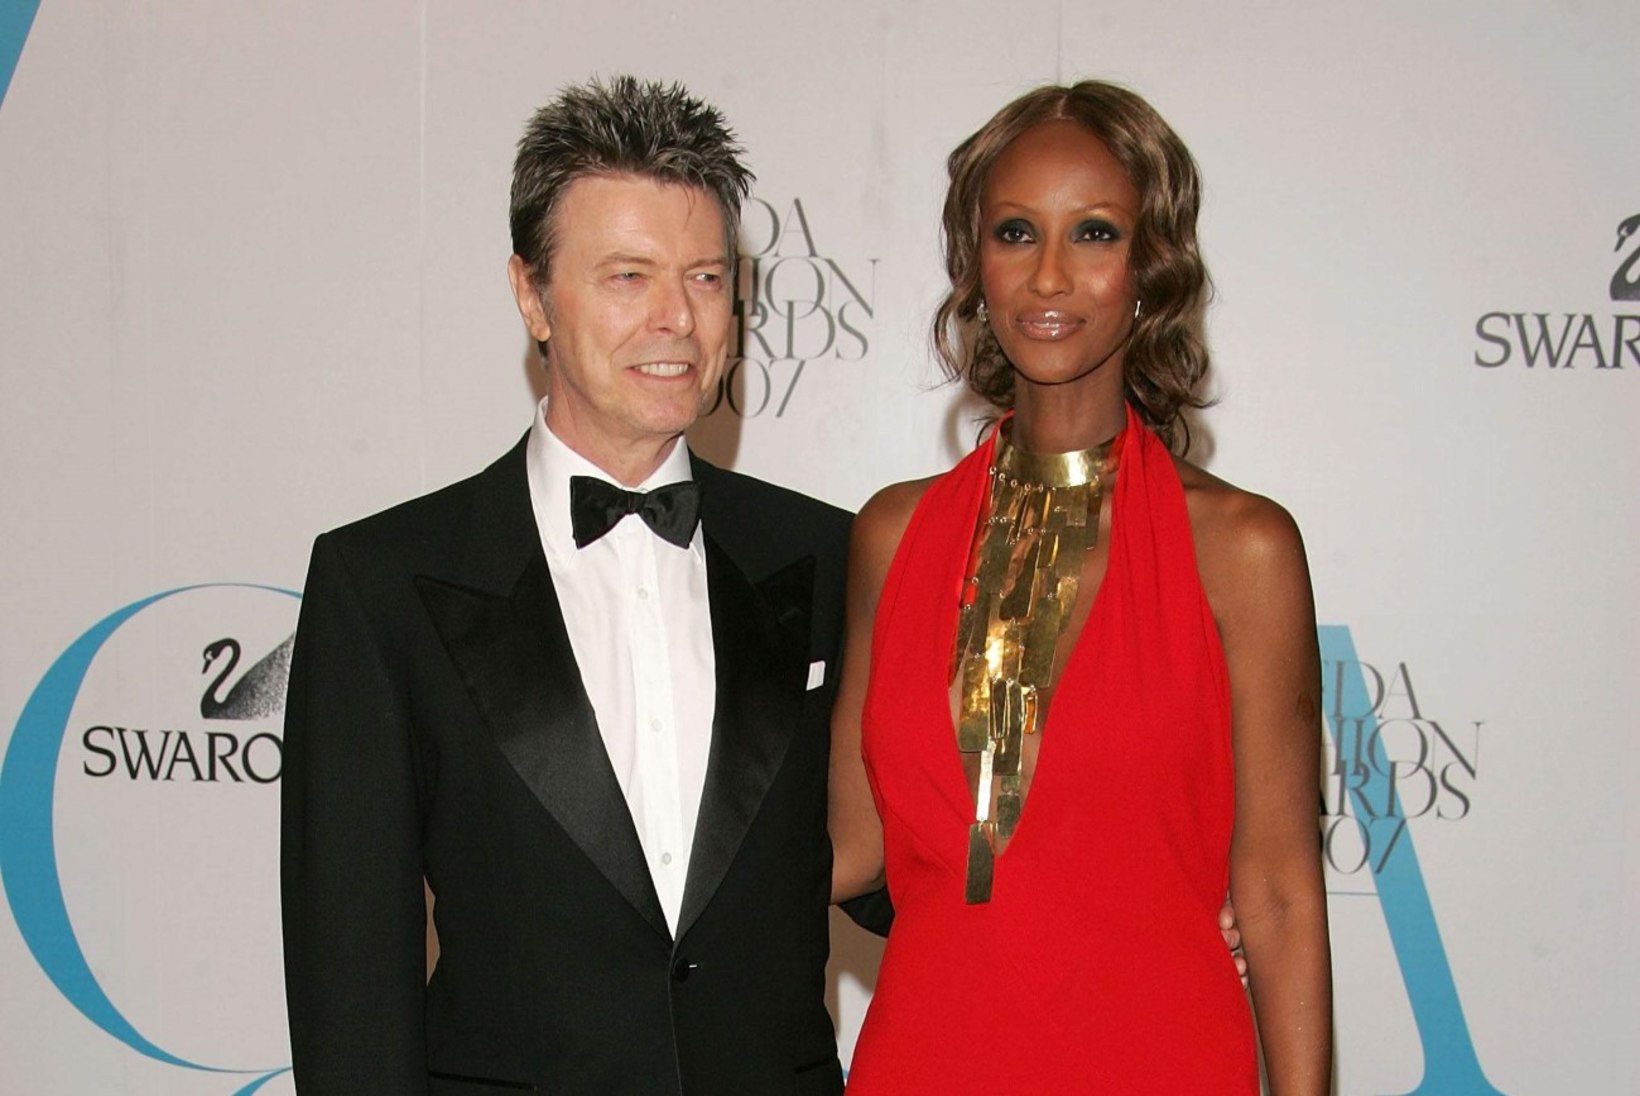 David Bowiest jäi maha 100 miljonit dollarit